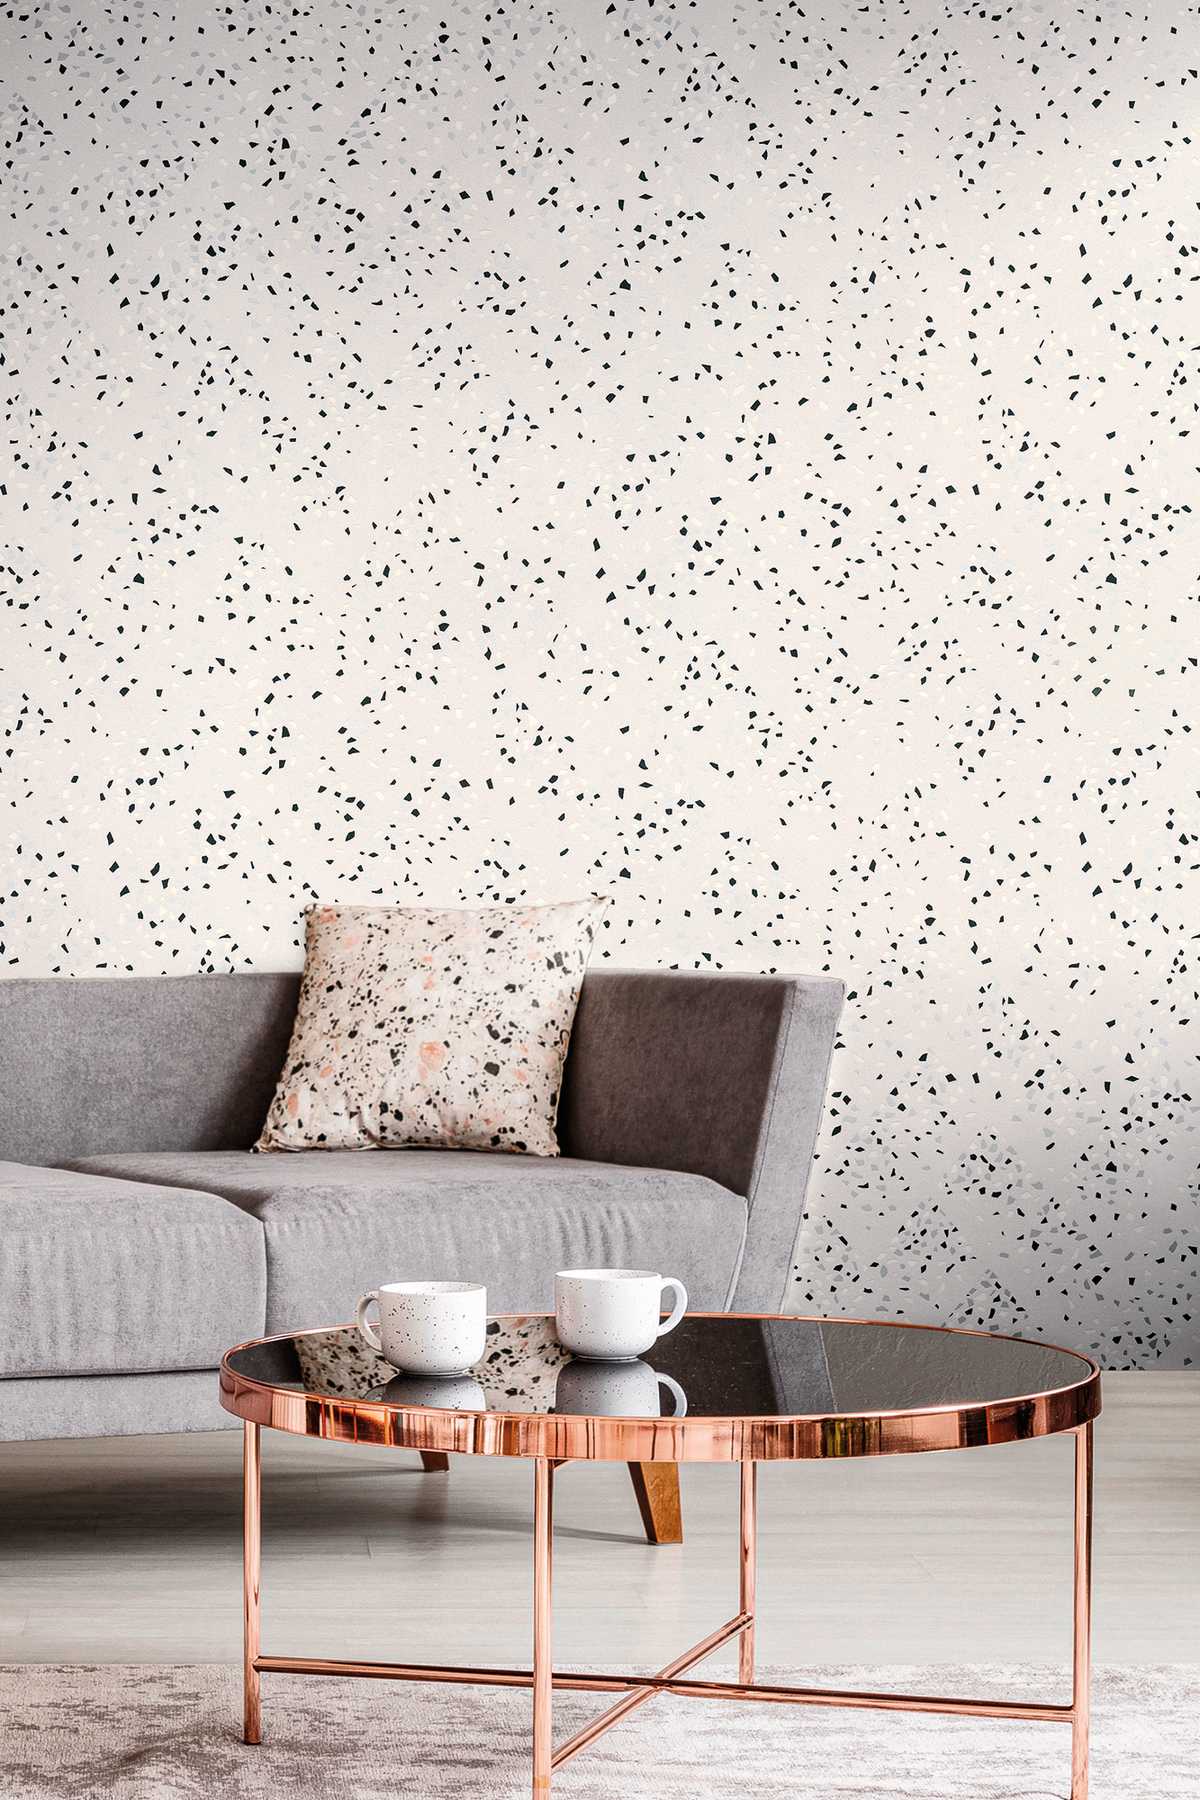             wallpaper terrazzo pattern & metallic effect - white, black, silver
        